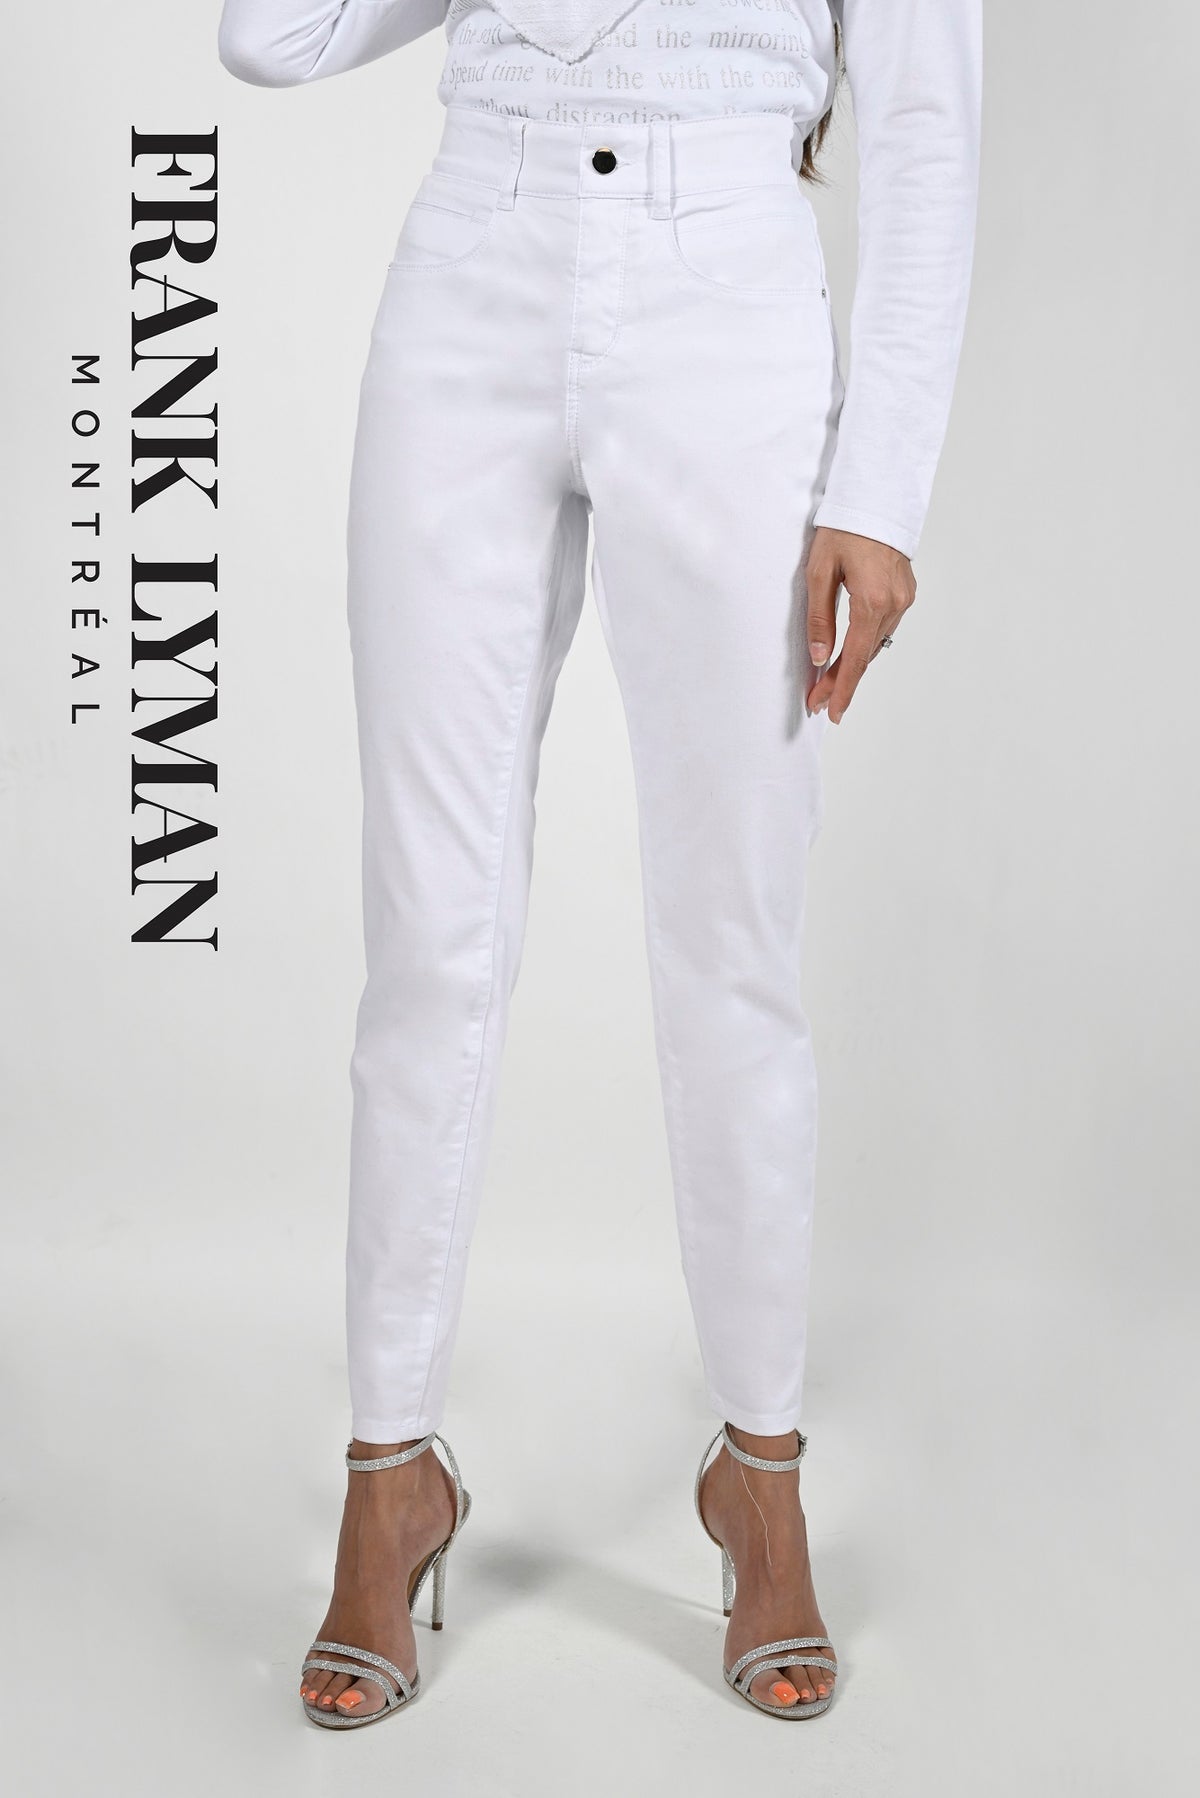 Jeans Frank Lyman - 213126U WHITE - Boutique Vvög, référence en mode pour homme et femme